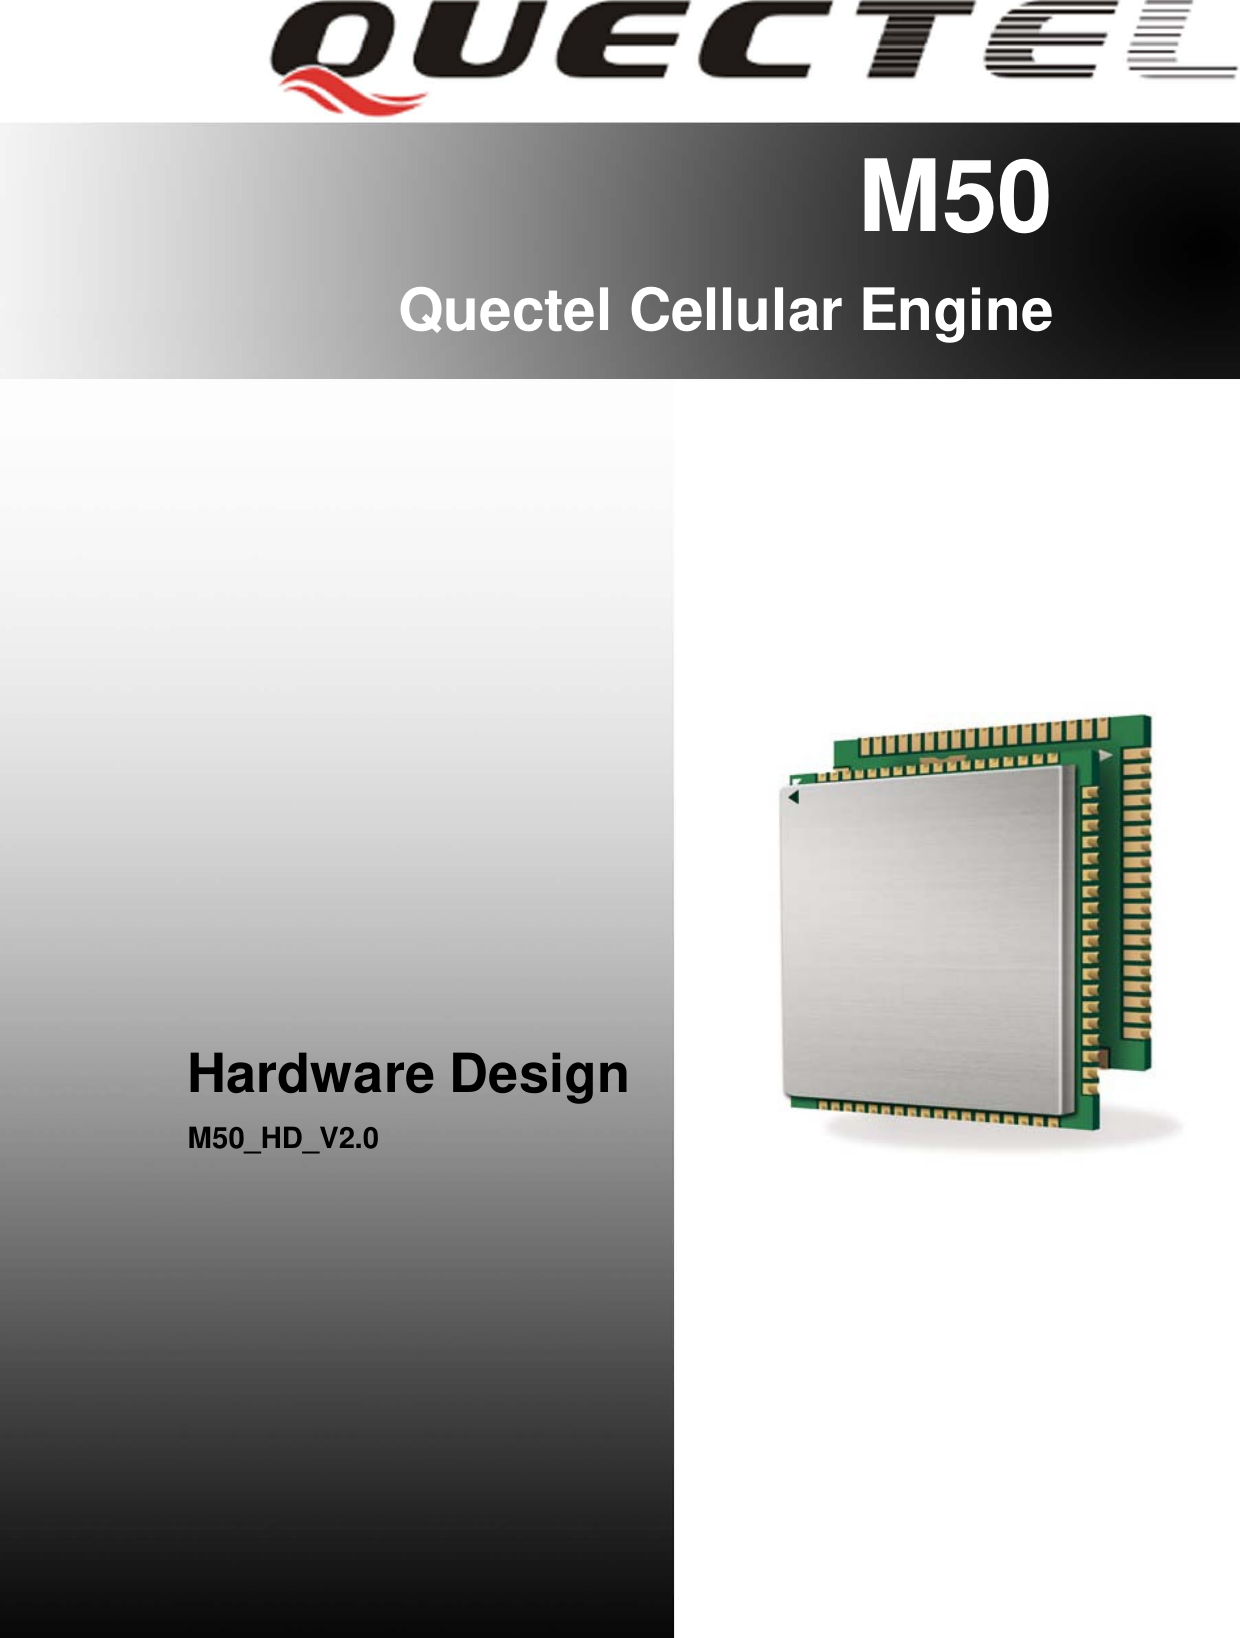 M50Hardware Design                                                     M50_HD_V2.0                                                                      - 1 -      M50 Quectel Cellular Engine                  Hardware Design M50_HD_V2.0         